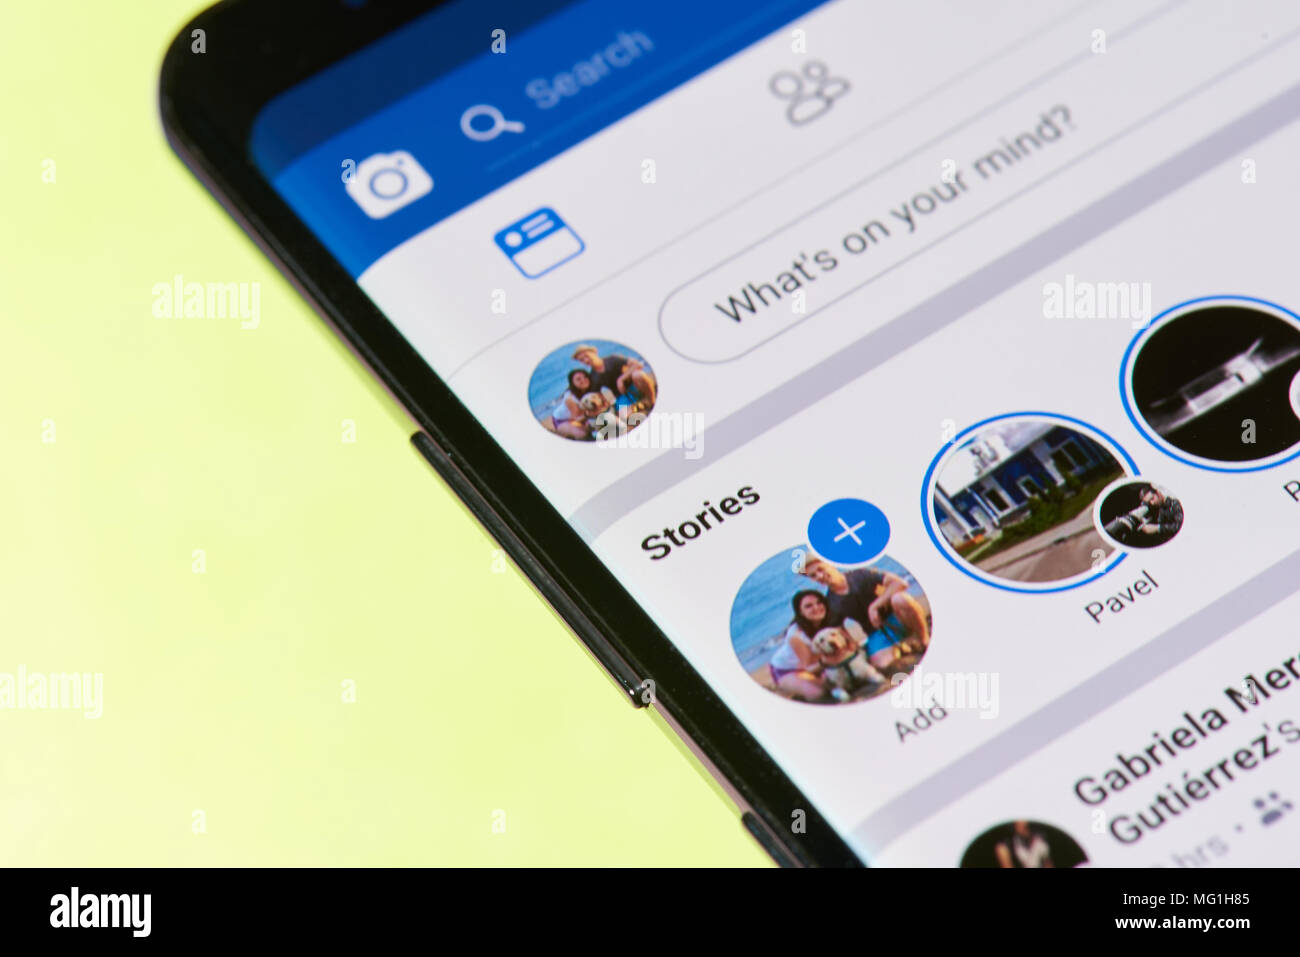 New York, USA - avril26, 2018 : Facebook stories menu sur l'écran du smartphone close-up Banque D'Images